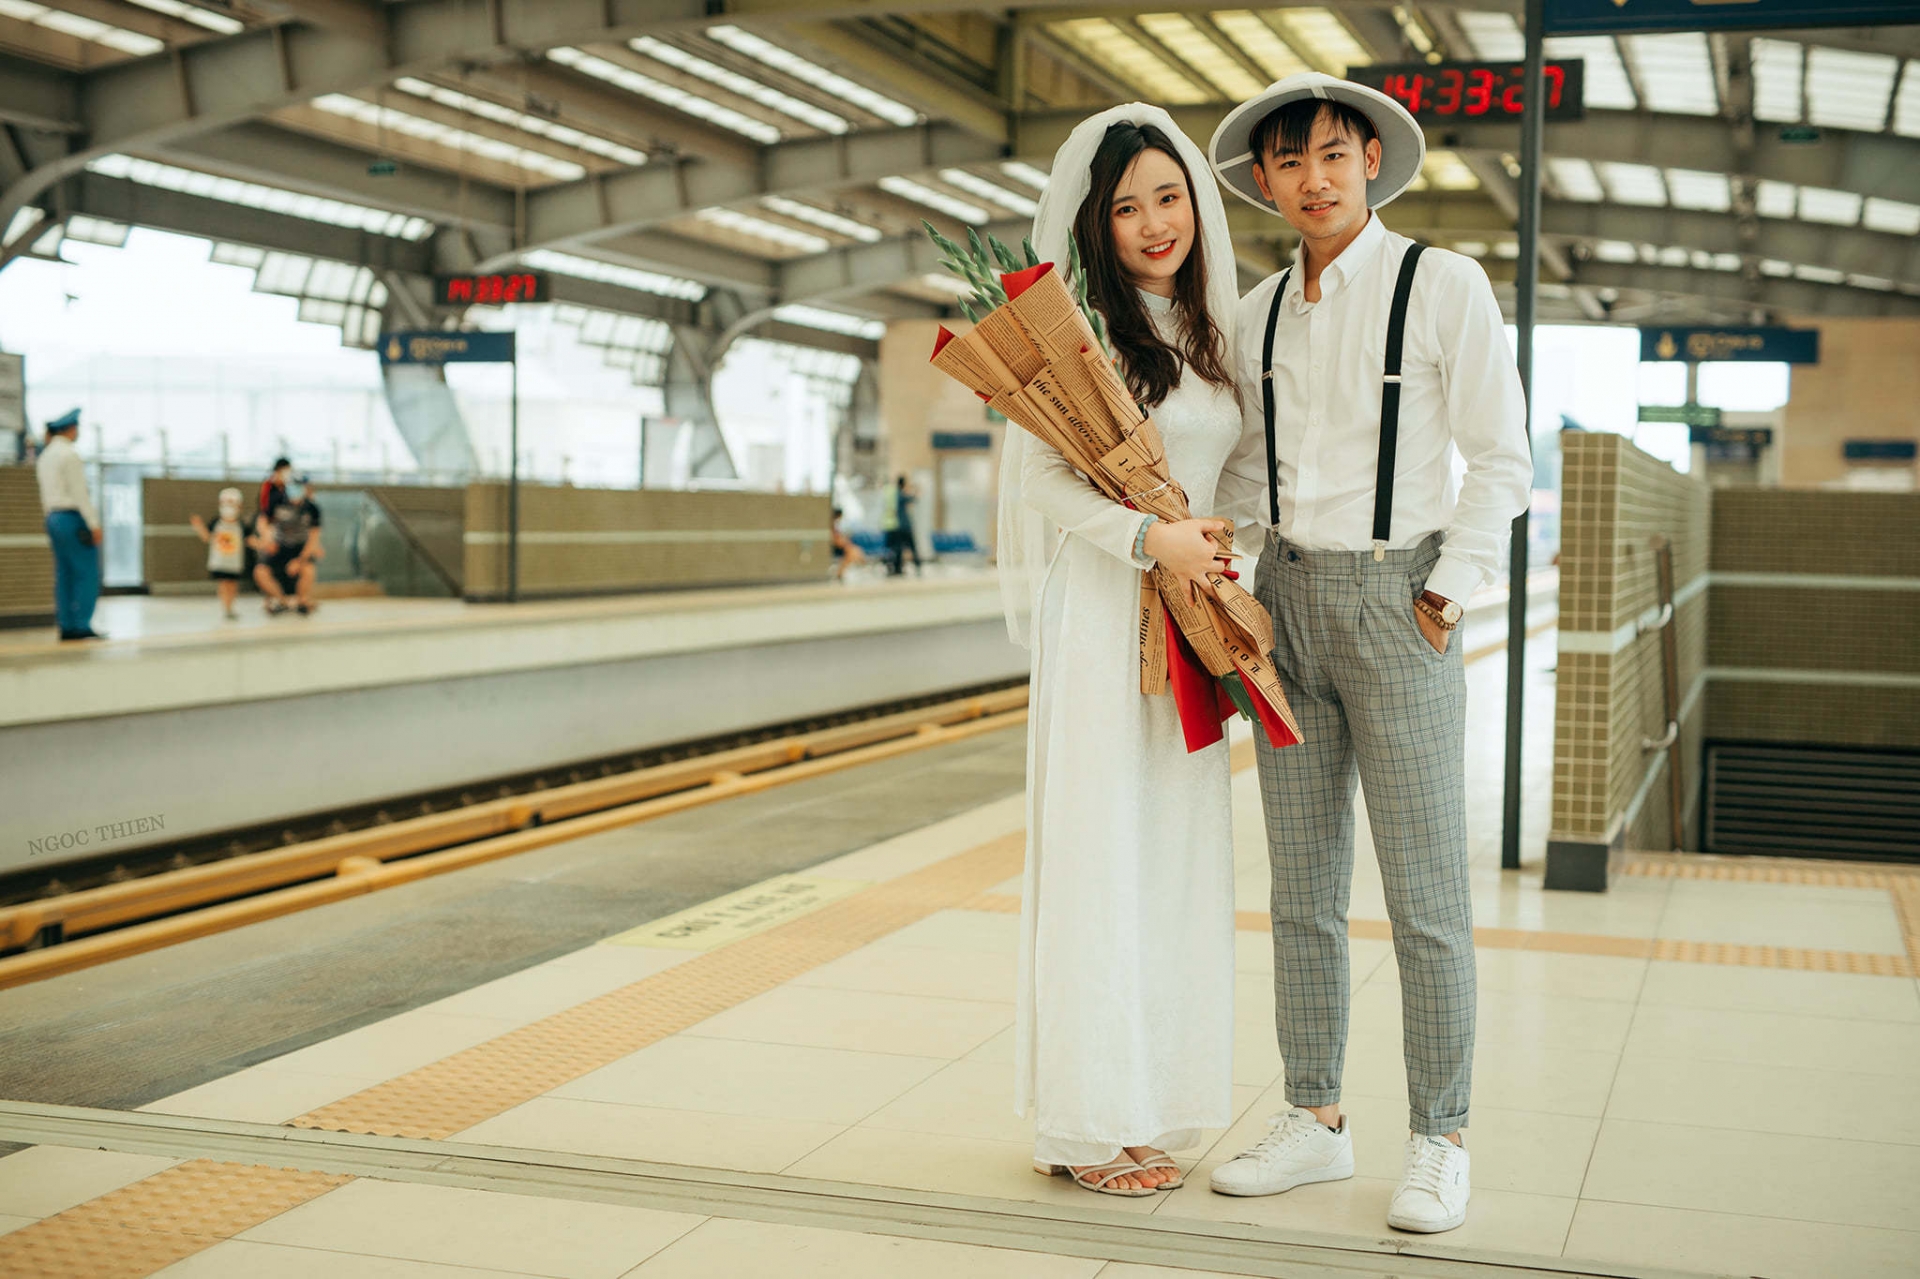  Đôi bạn trẻ chụp ảnh cưới tuyệt đẹp tại đường sắt Cát Linh - Hà Đông  - Ảnh 3